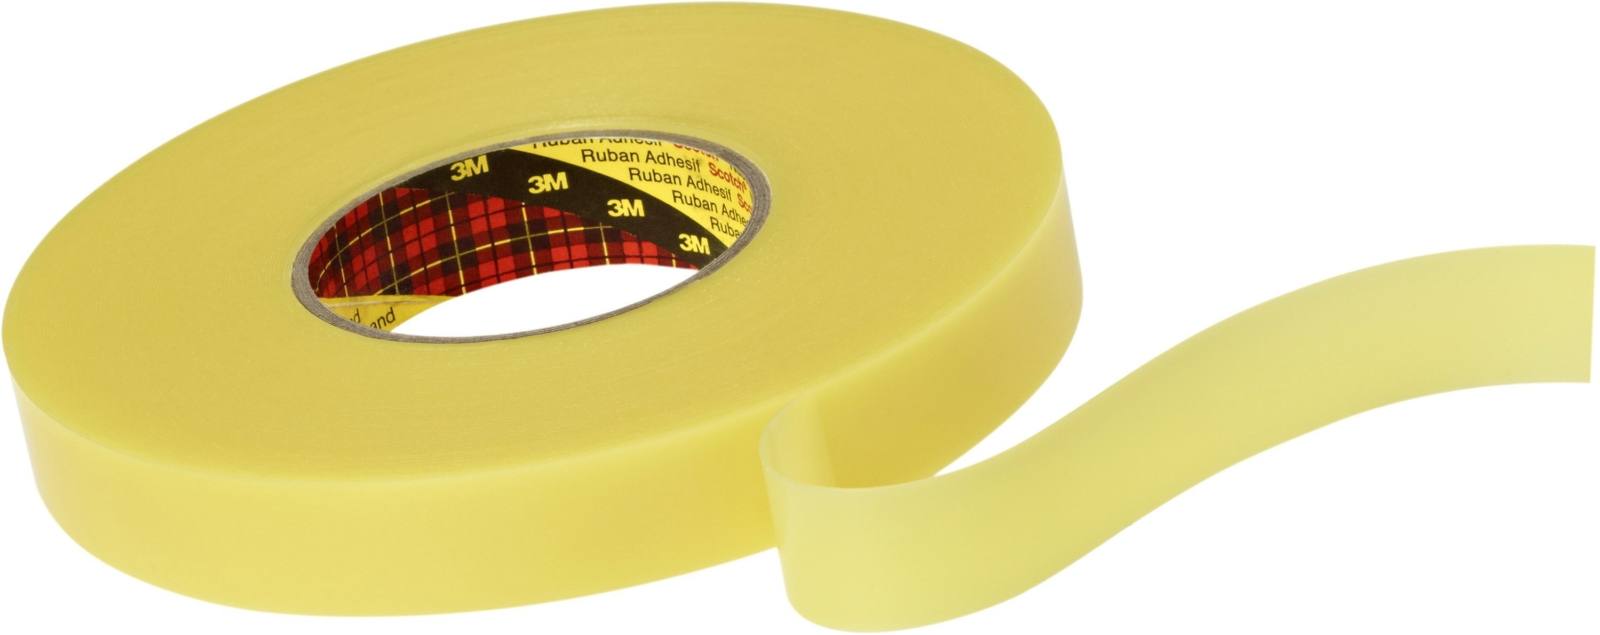 3M Dubbelzijdig verwijderbaar plakband 4656F, geel, 9 mm x 33 m, 0,6 mm